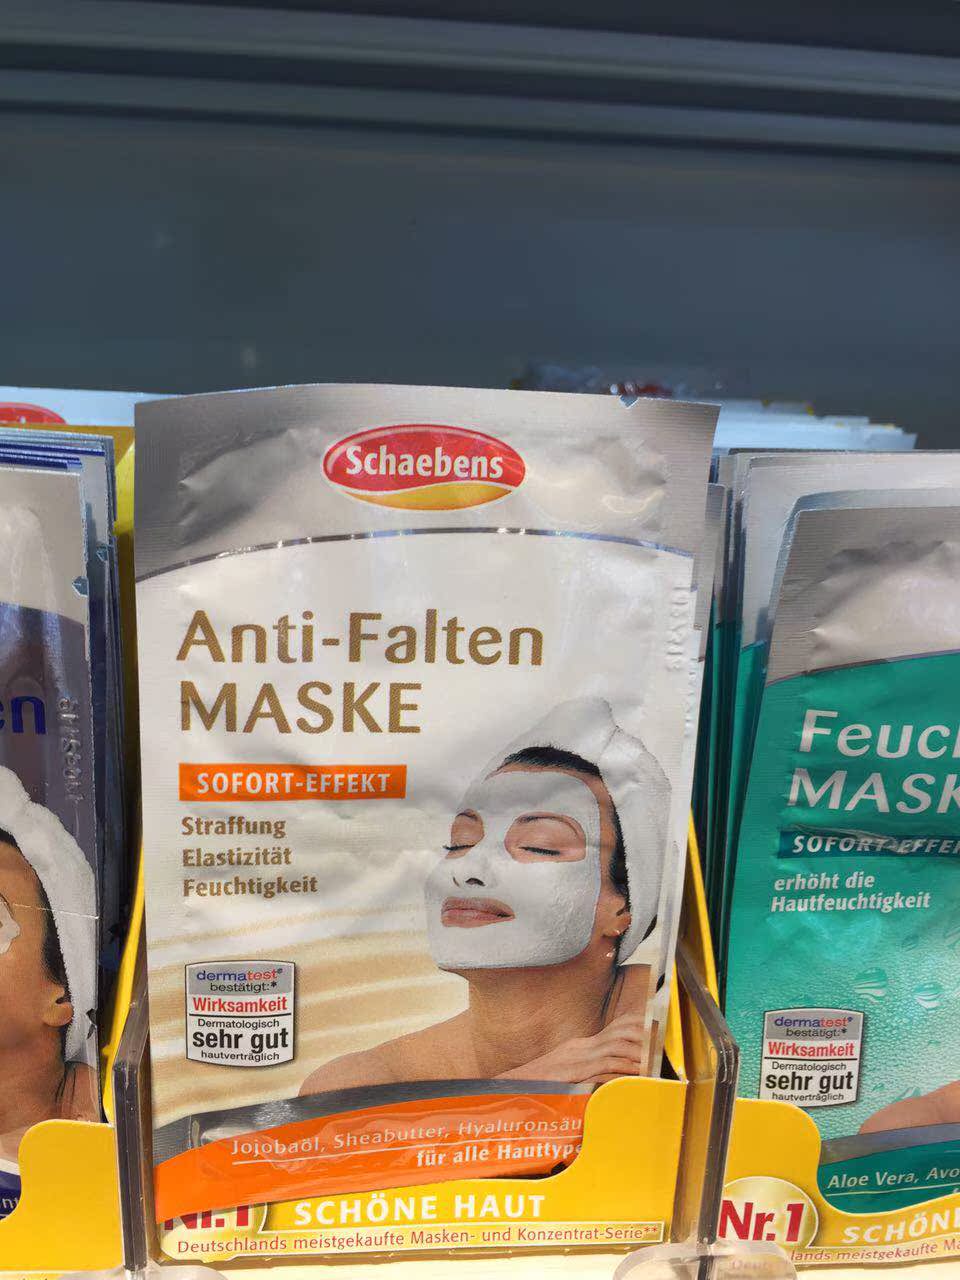 【现货】德国面膜世家雪本诗 瞬间见效抗皱Anti-falten maske折扣优惠信息